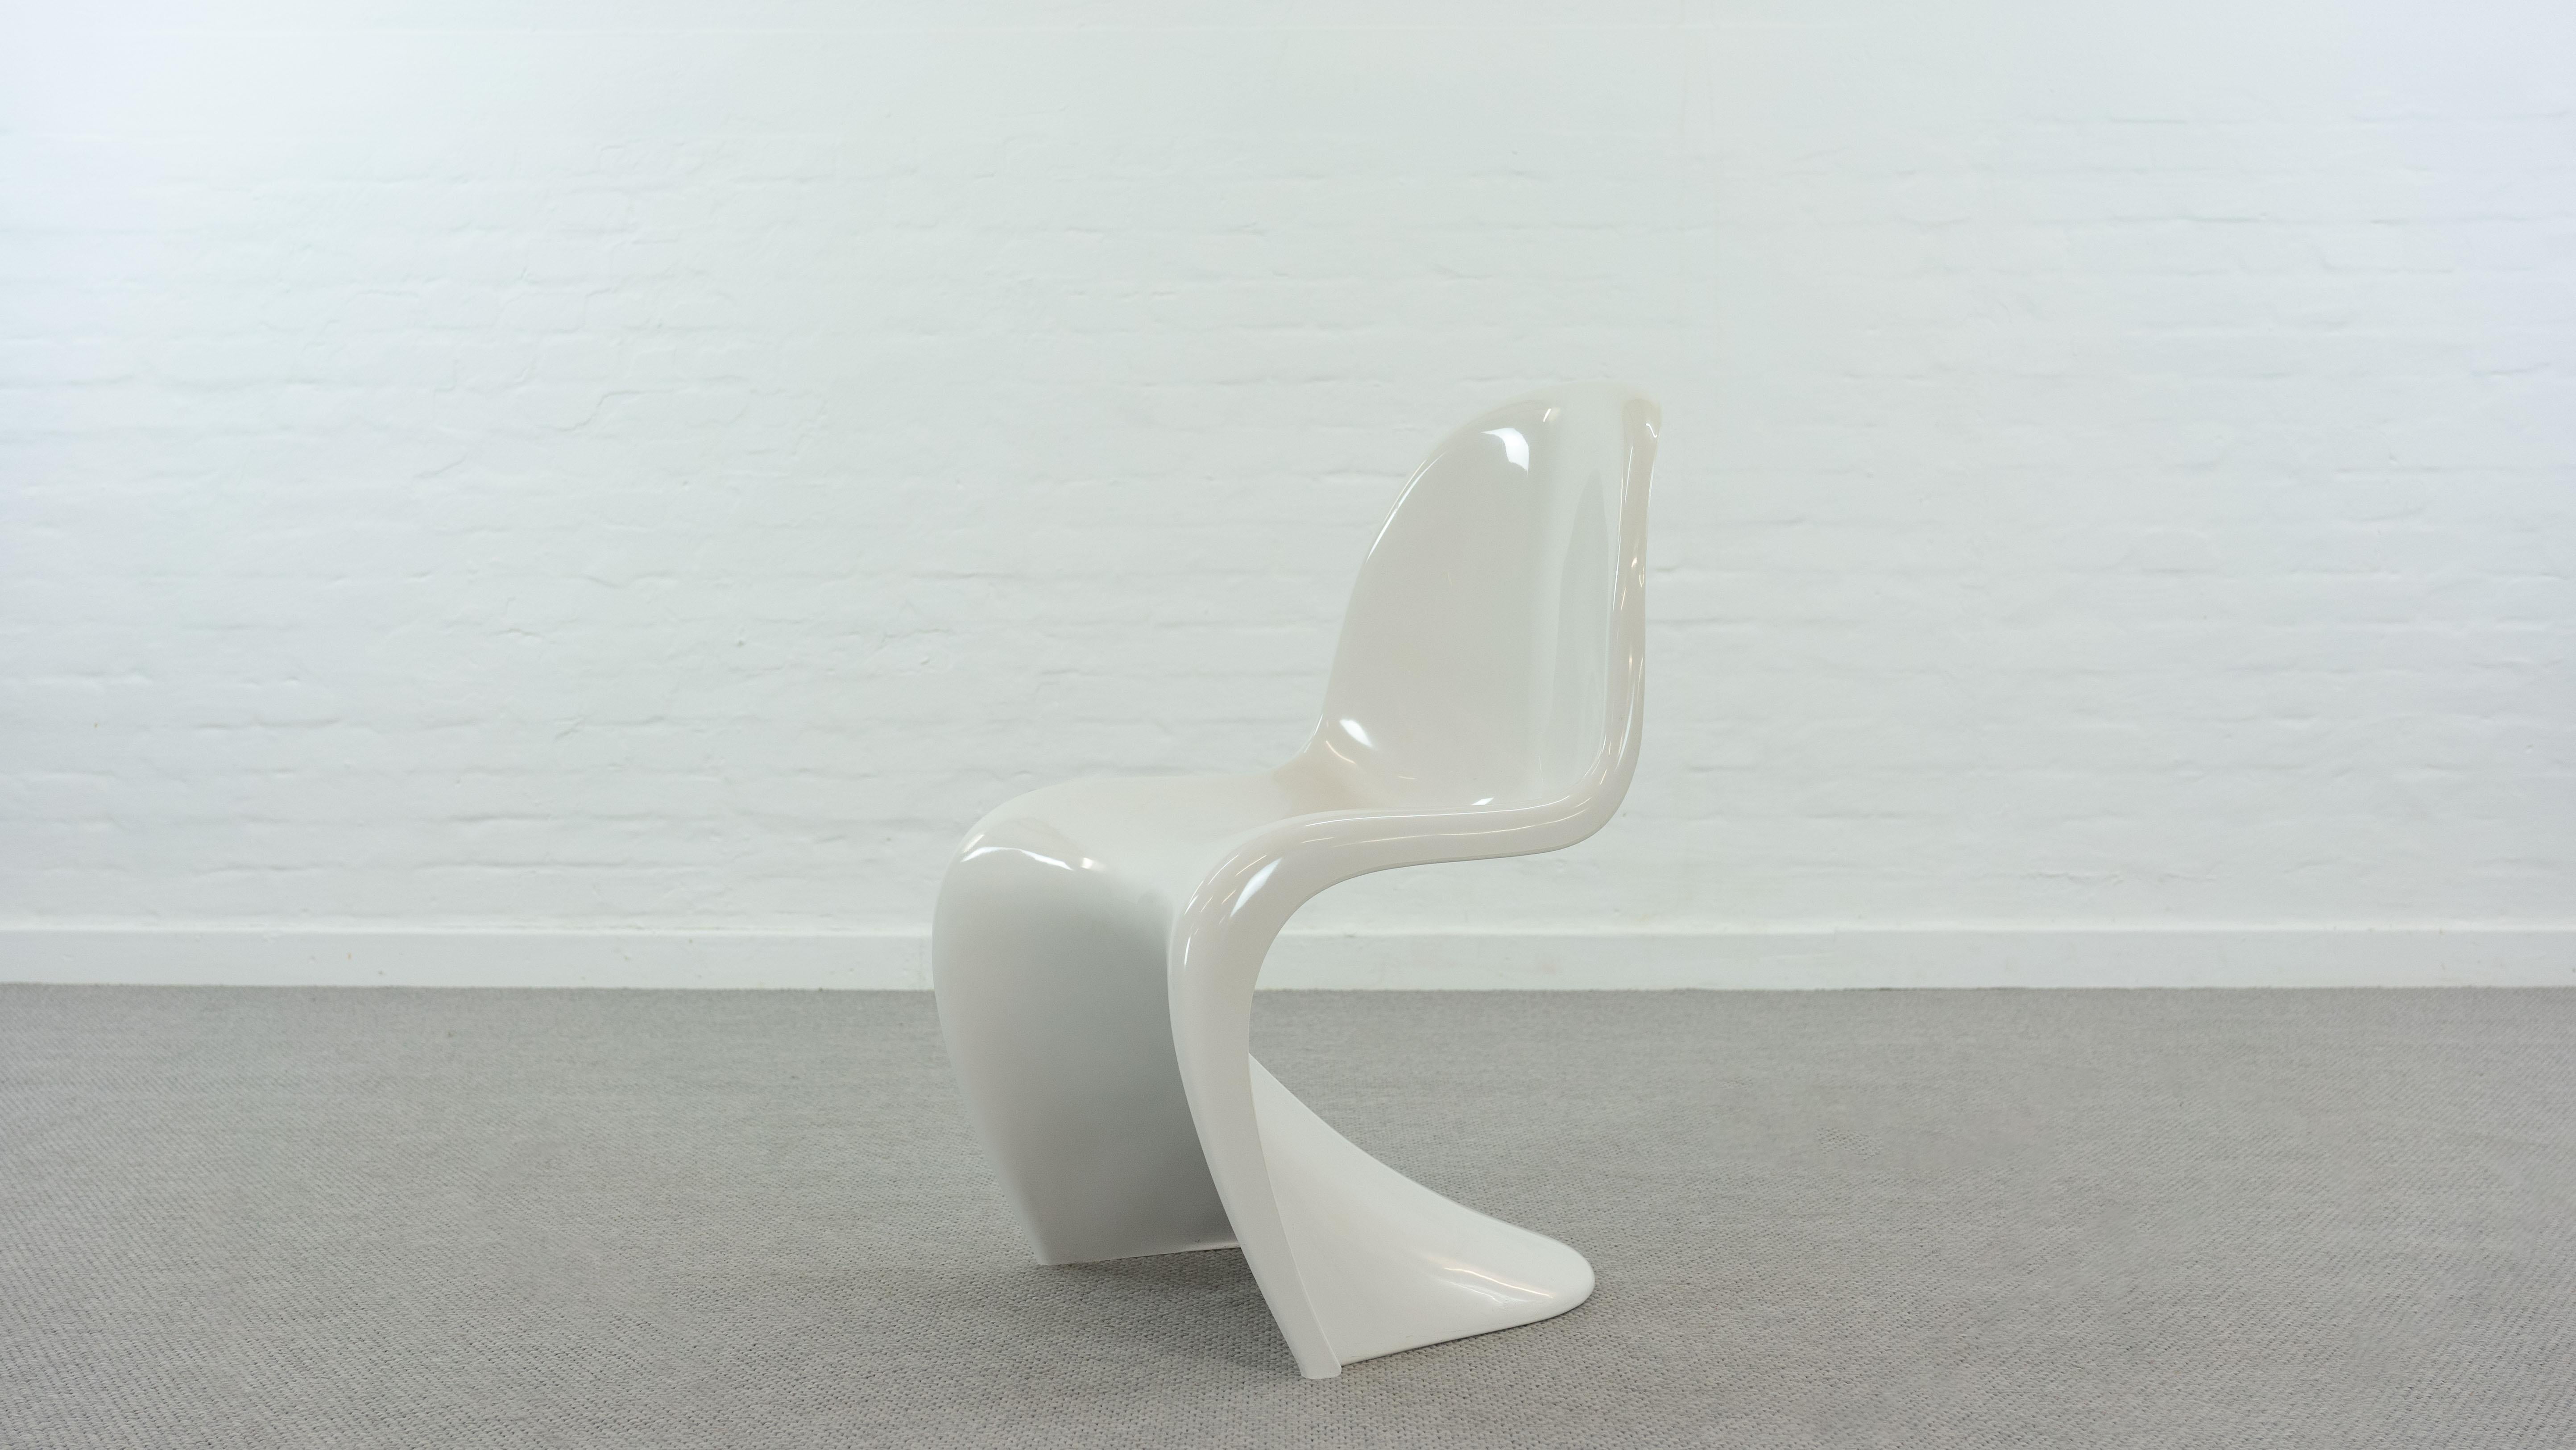 Panton S-Chair, conçu par Verner Panton pour Hermann Miller / Fehlbaum. Couleur : blanc. La chaise fait partie de la deuxième série de production à partir de 1970. Elle est fabriquée en luran-s thermoplastique avec des nervures de renforcement en